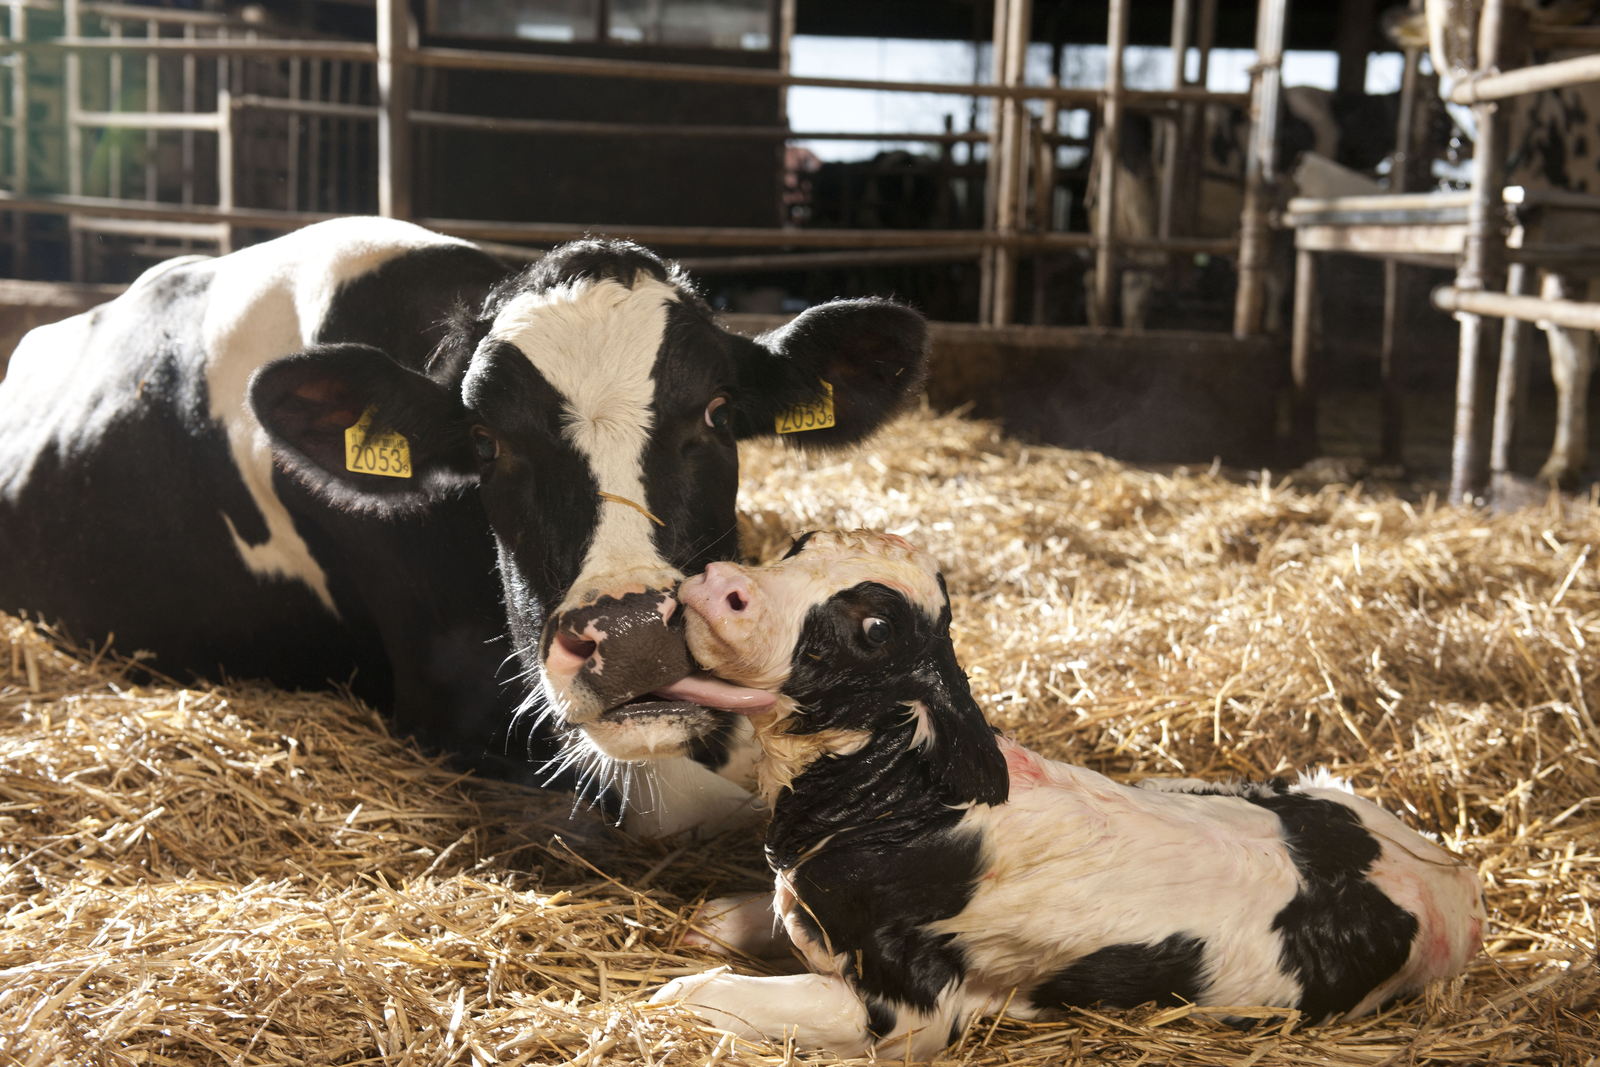 De vruchtbaarheid van koeien kan verbeteren met optimale voeding van droge en verse koeien, goede tochtdetectie, scannen van koeien op dracht en afwijkinge en het beperken van inteelt om embryonale sterfte te voorkomen.